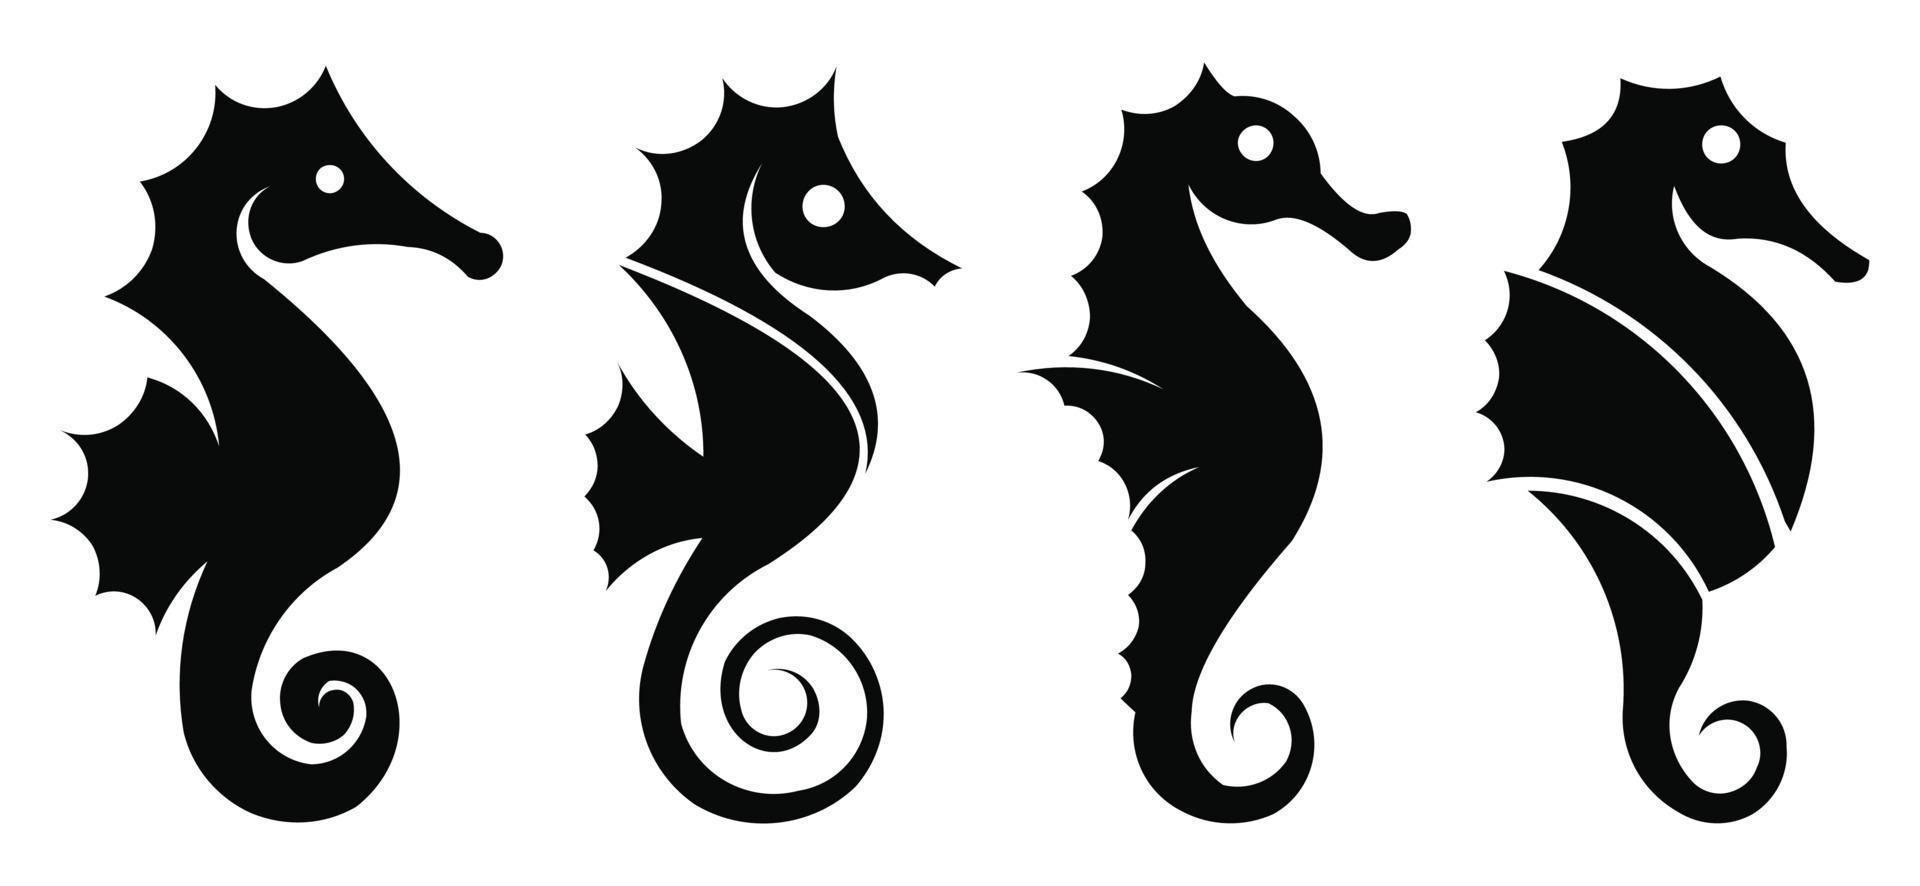 símbolo gráfico da vida marinha de cavalo-marinho, cavalo-marinho de silhueta preta isolado no fundo branco, vetor detalhado alto de cavalo-marinho